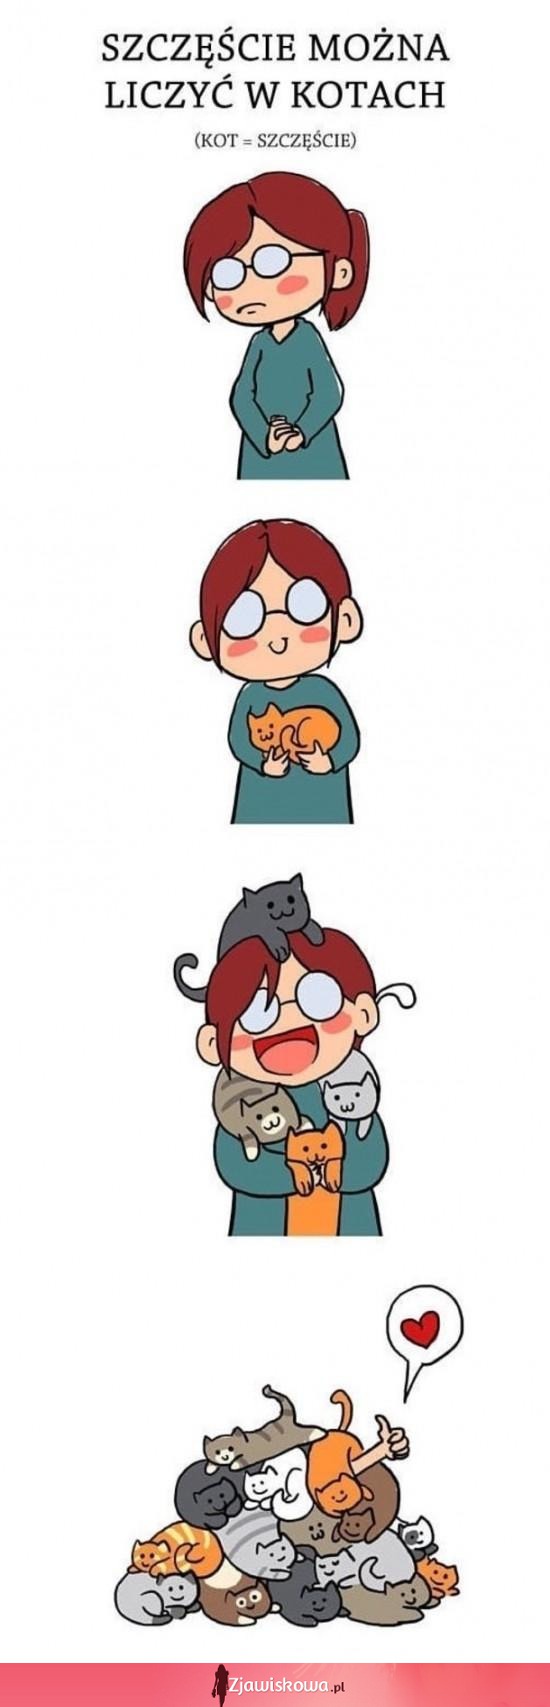 Szczęście liczone w kotach